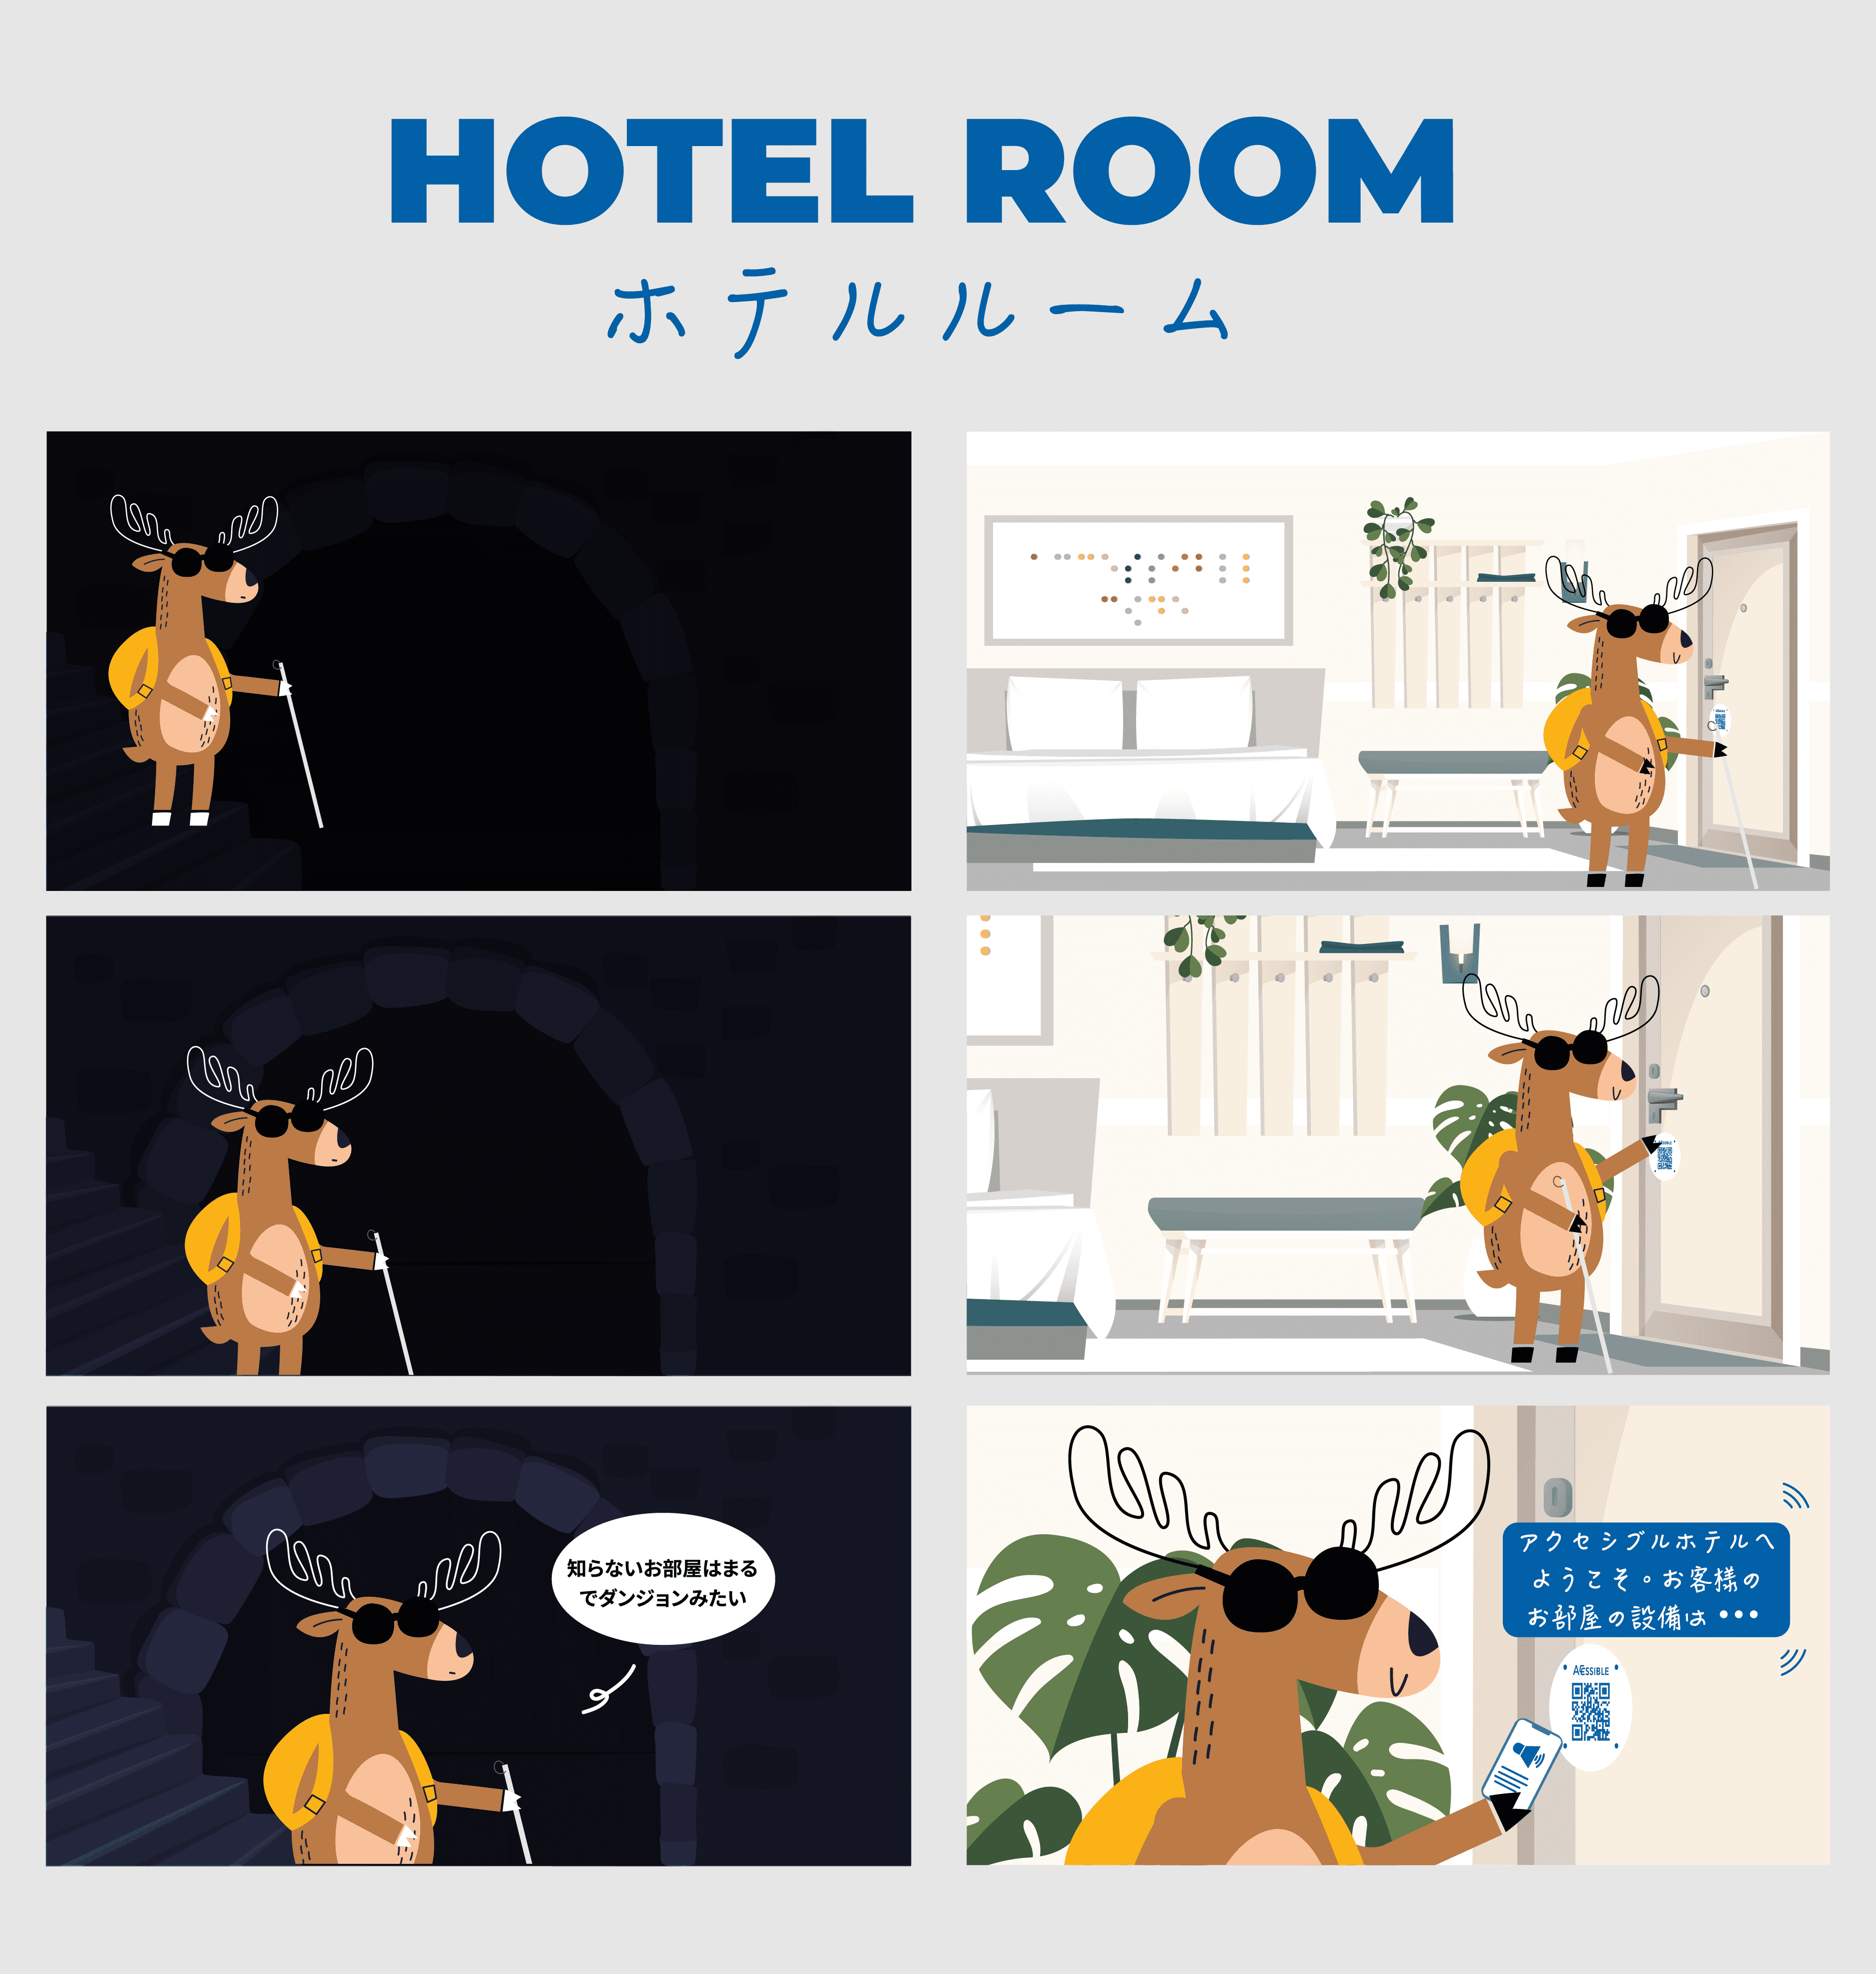 視覚障害者がホテルルームでアクセシブルコードで客室表示を確認している画像
